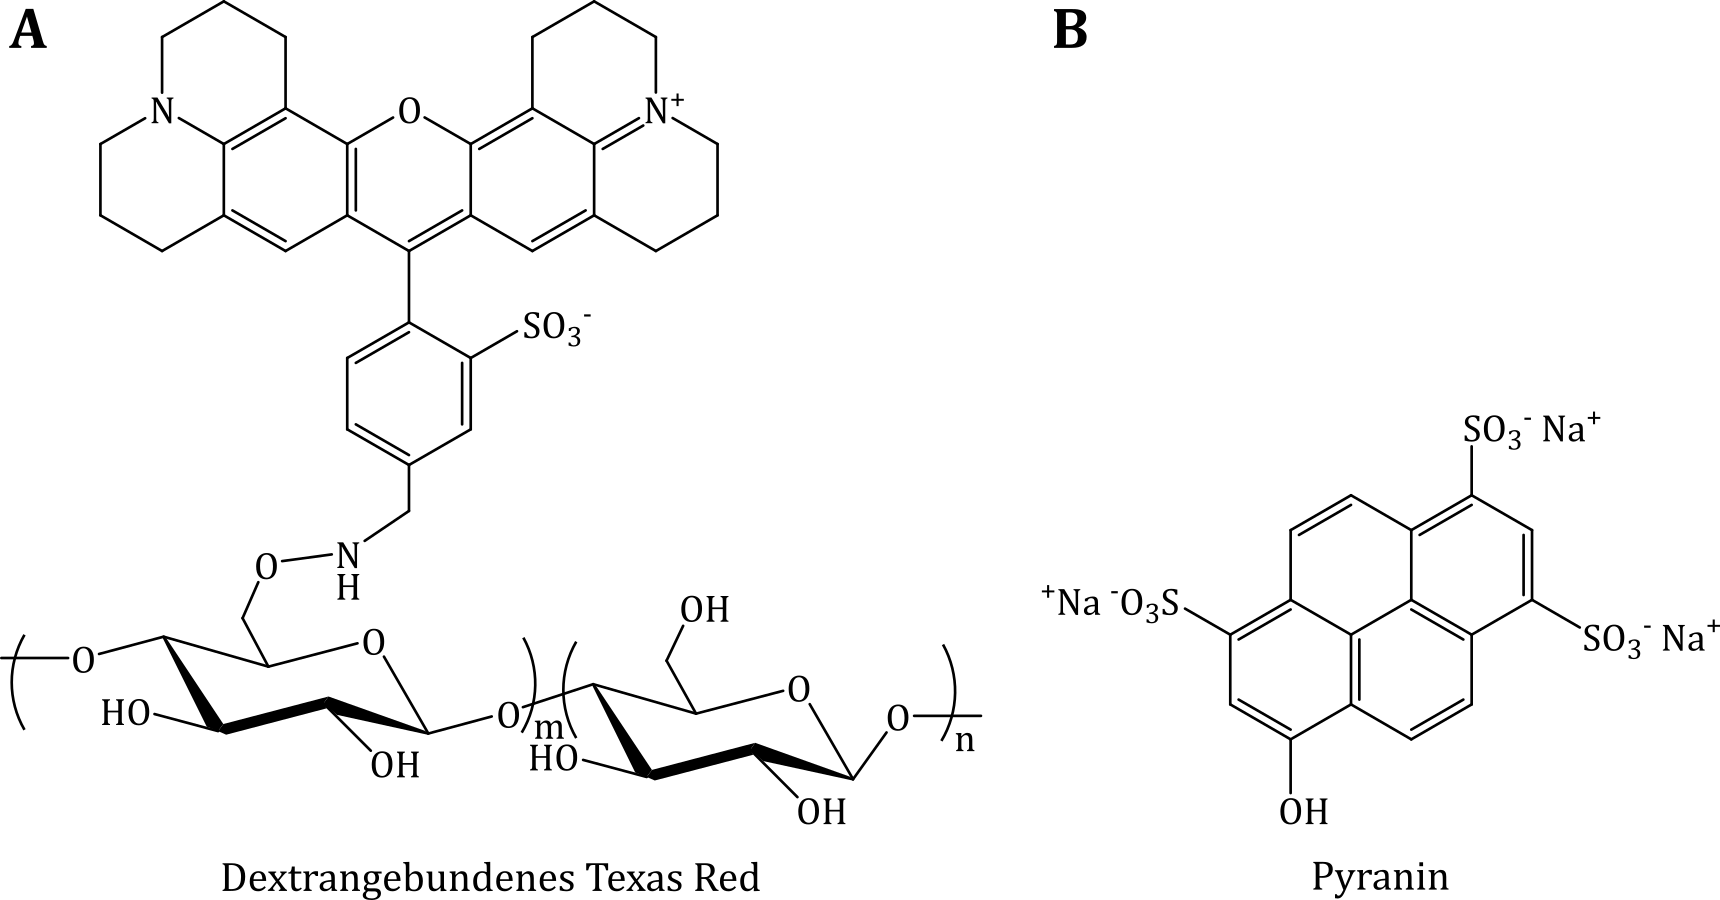 Strukturformeln der Moleküle von dextrangebundenem Texas Red sowie Pyranin. Die Glucoseeinheiten kön-nen α-1,4- oder α-1,6-glycosidisch verbunden sein, so dass verzweigte Dextrannetzwerke entstehen.